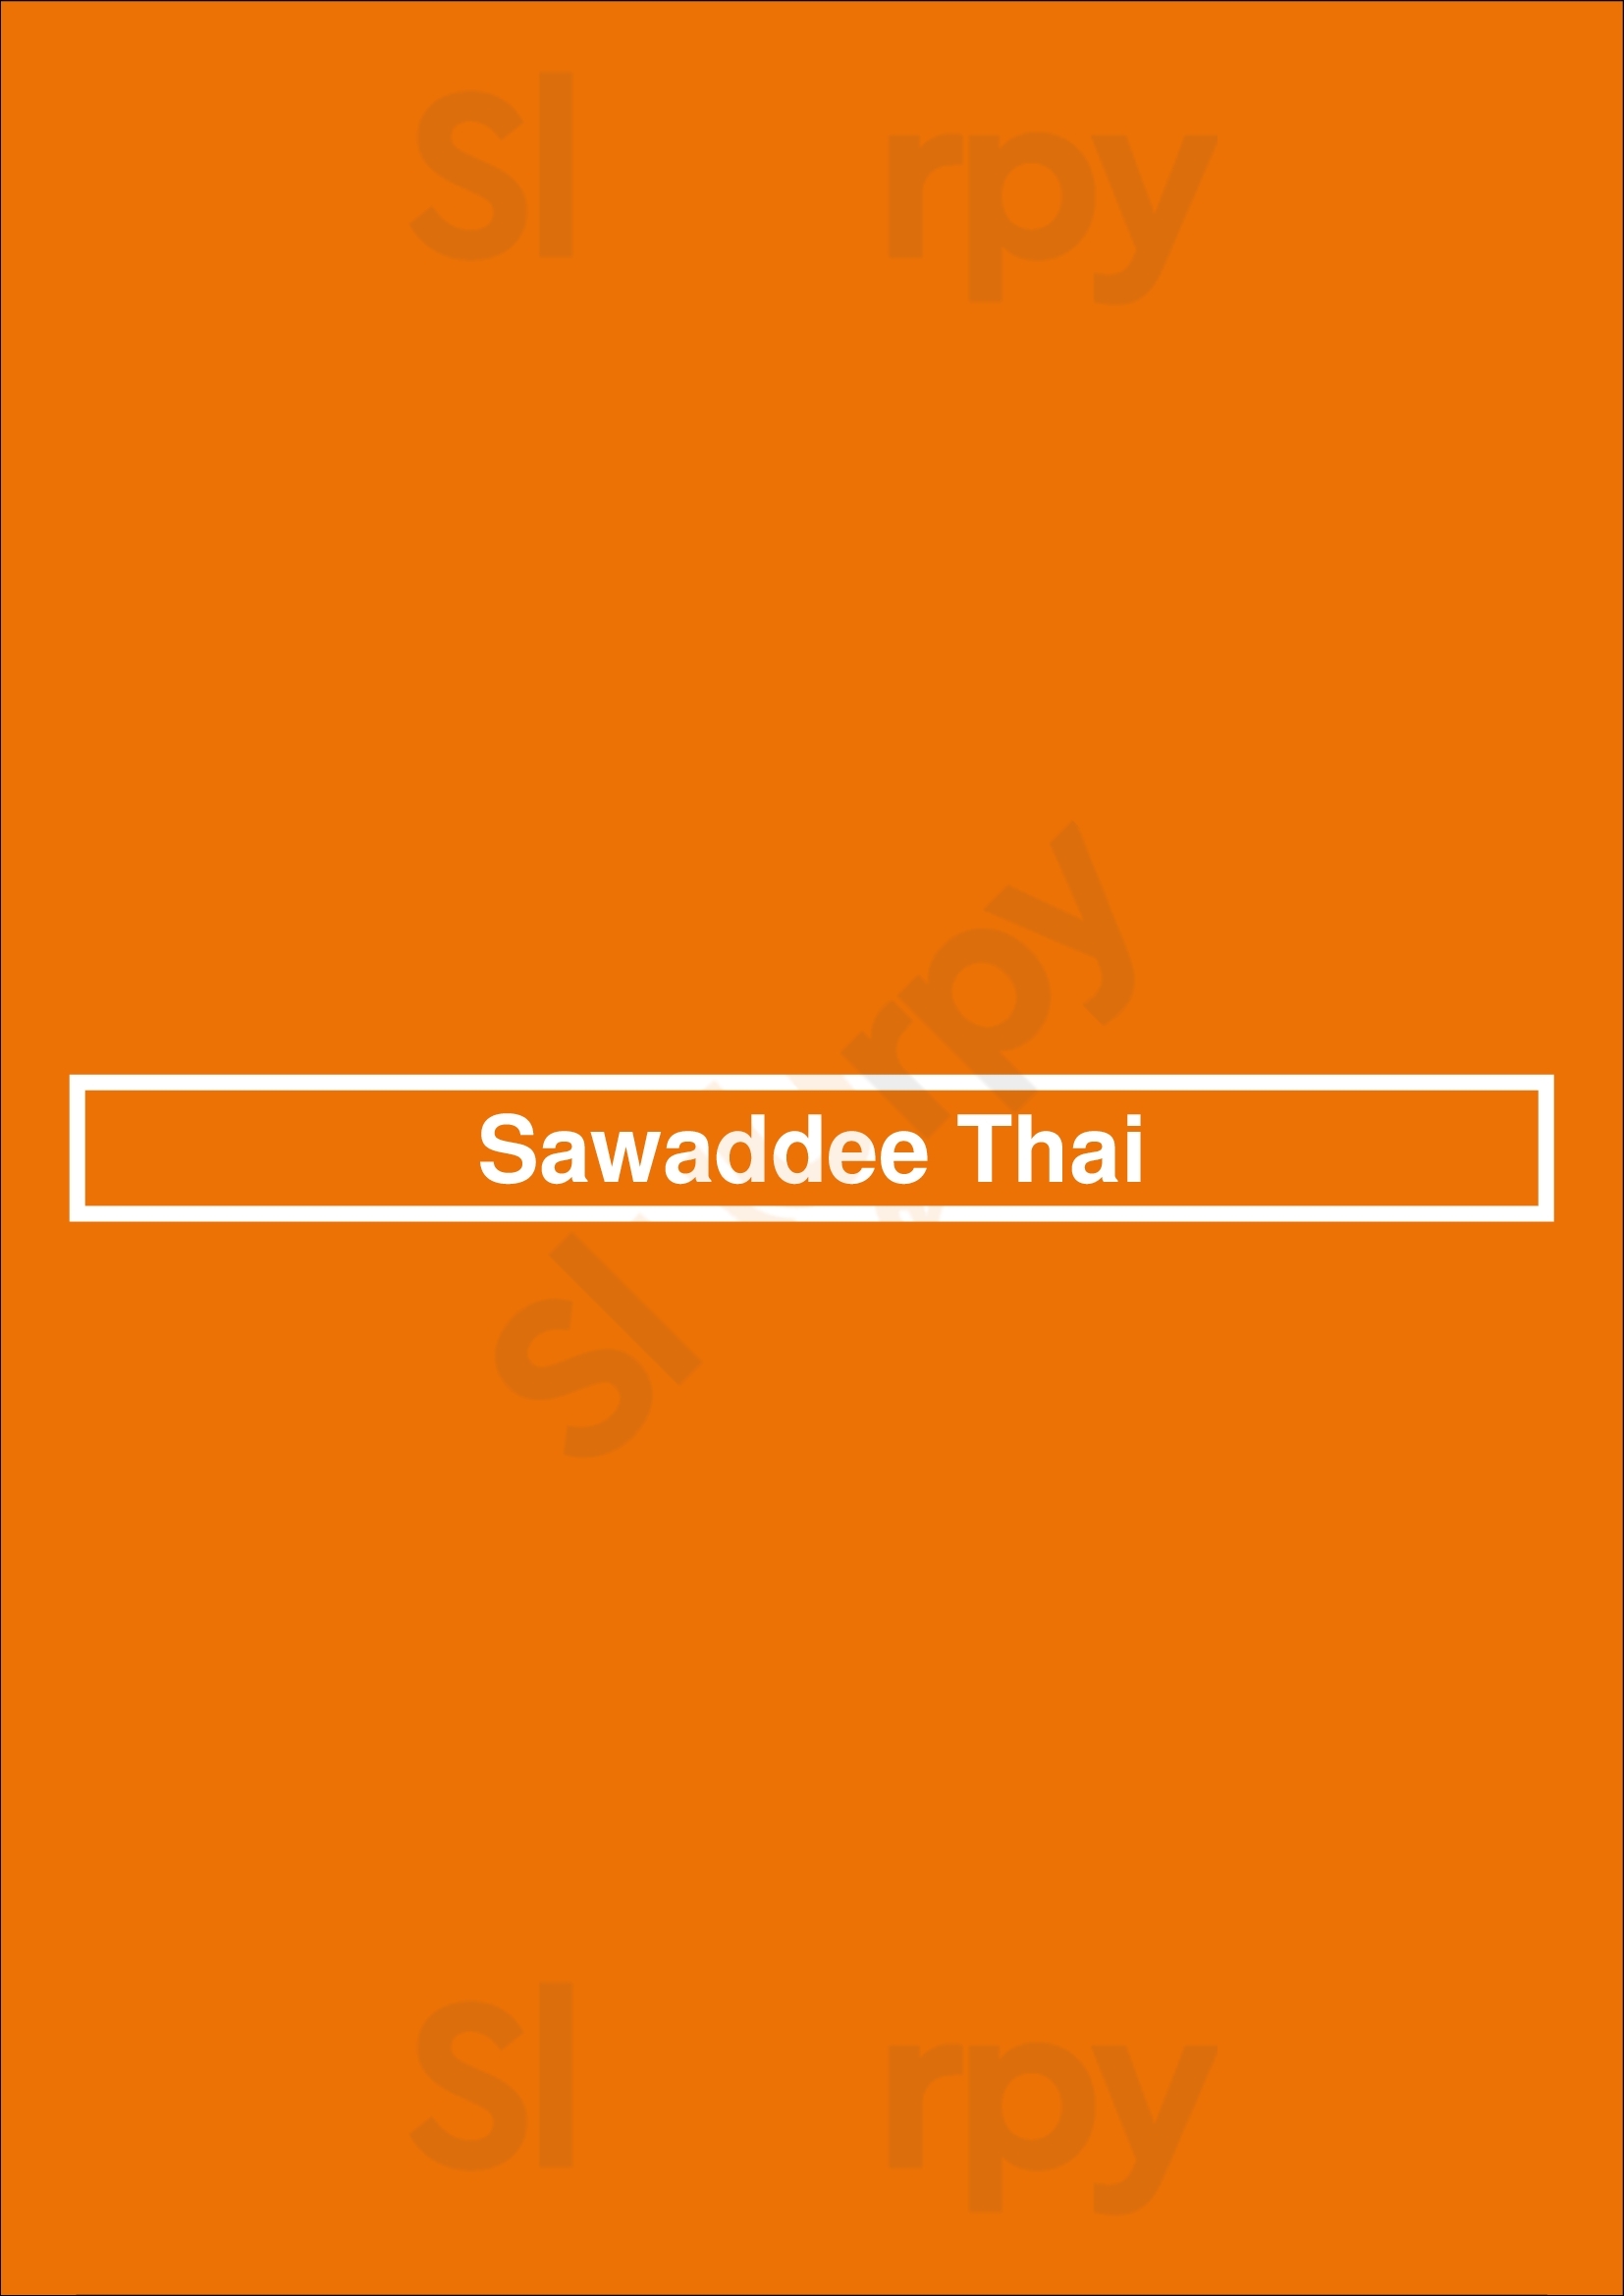 Sawaddee Thai Las Vegas Menu - 1